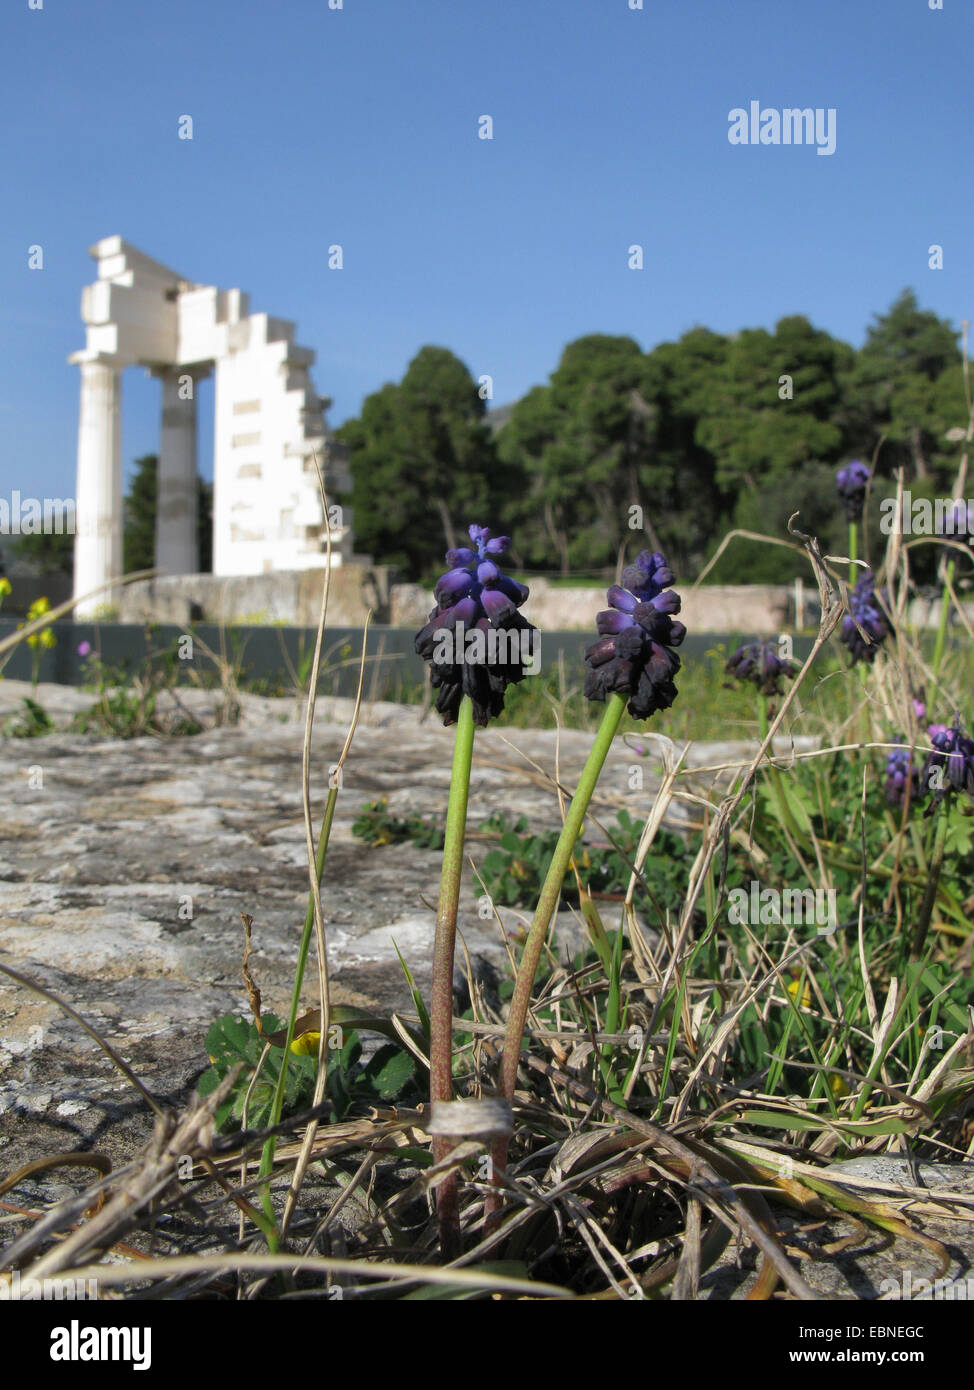 Uva scuro Giacinto (Muscari commutatum, Botryanthus commutatus), fioritura sul sito antico, Grecia, Peloponneso, Argolis, Epidauros Foto Stock